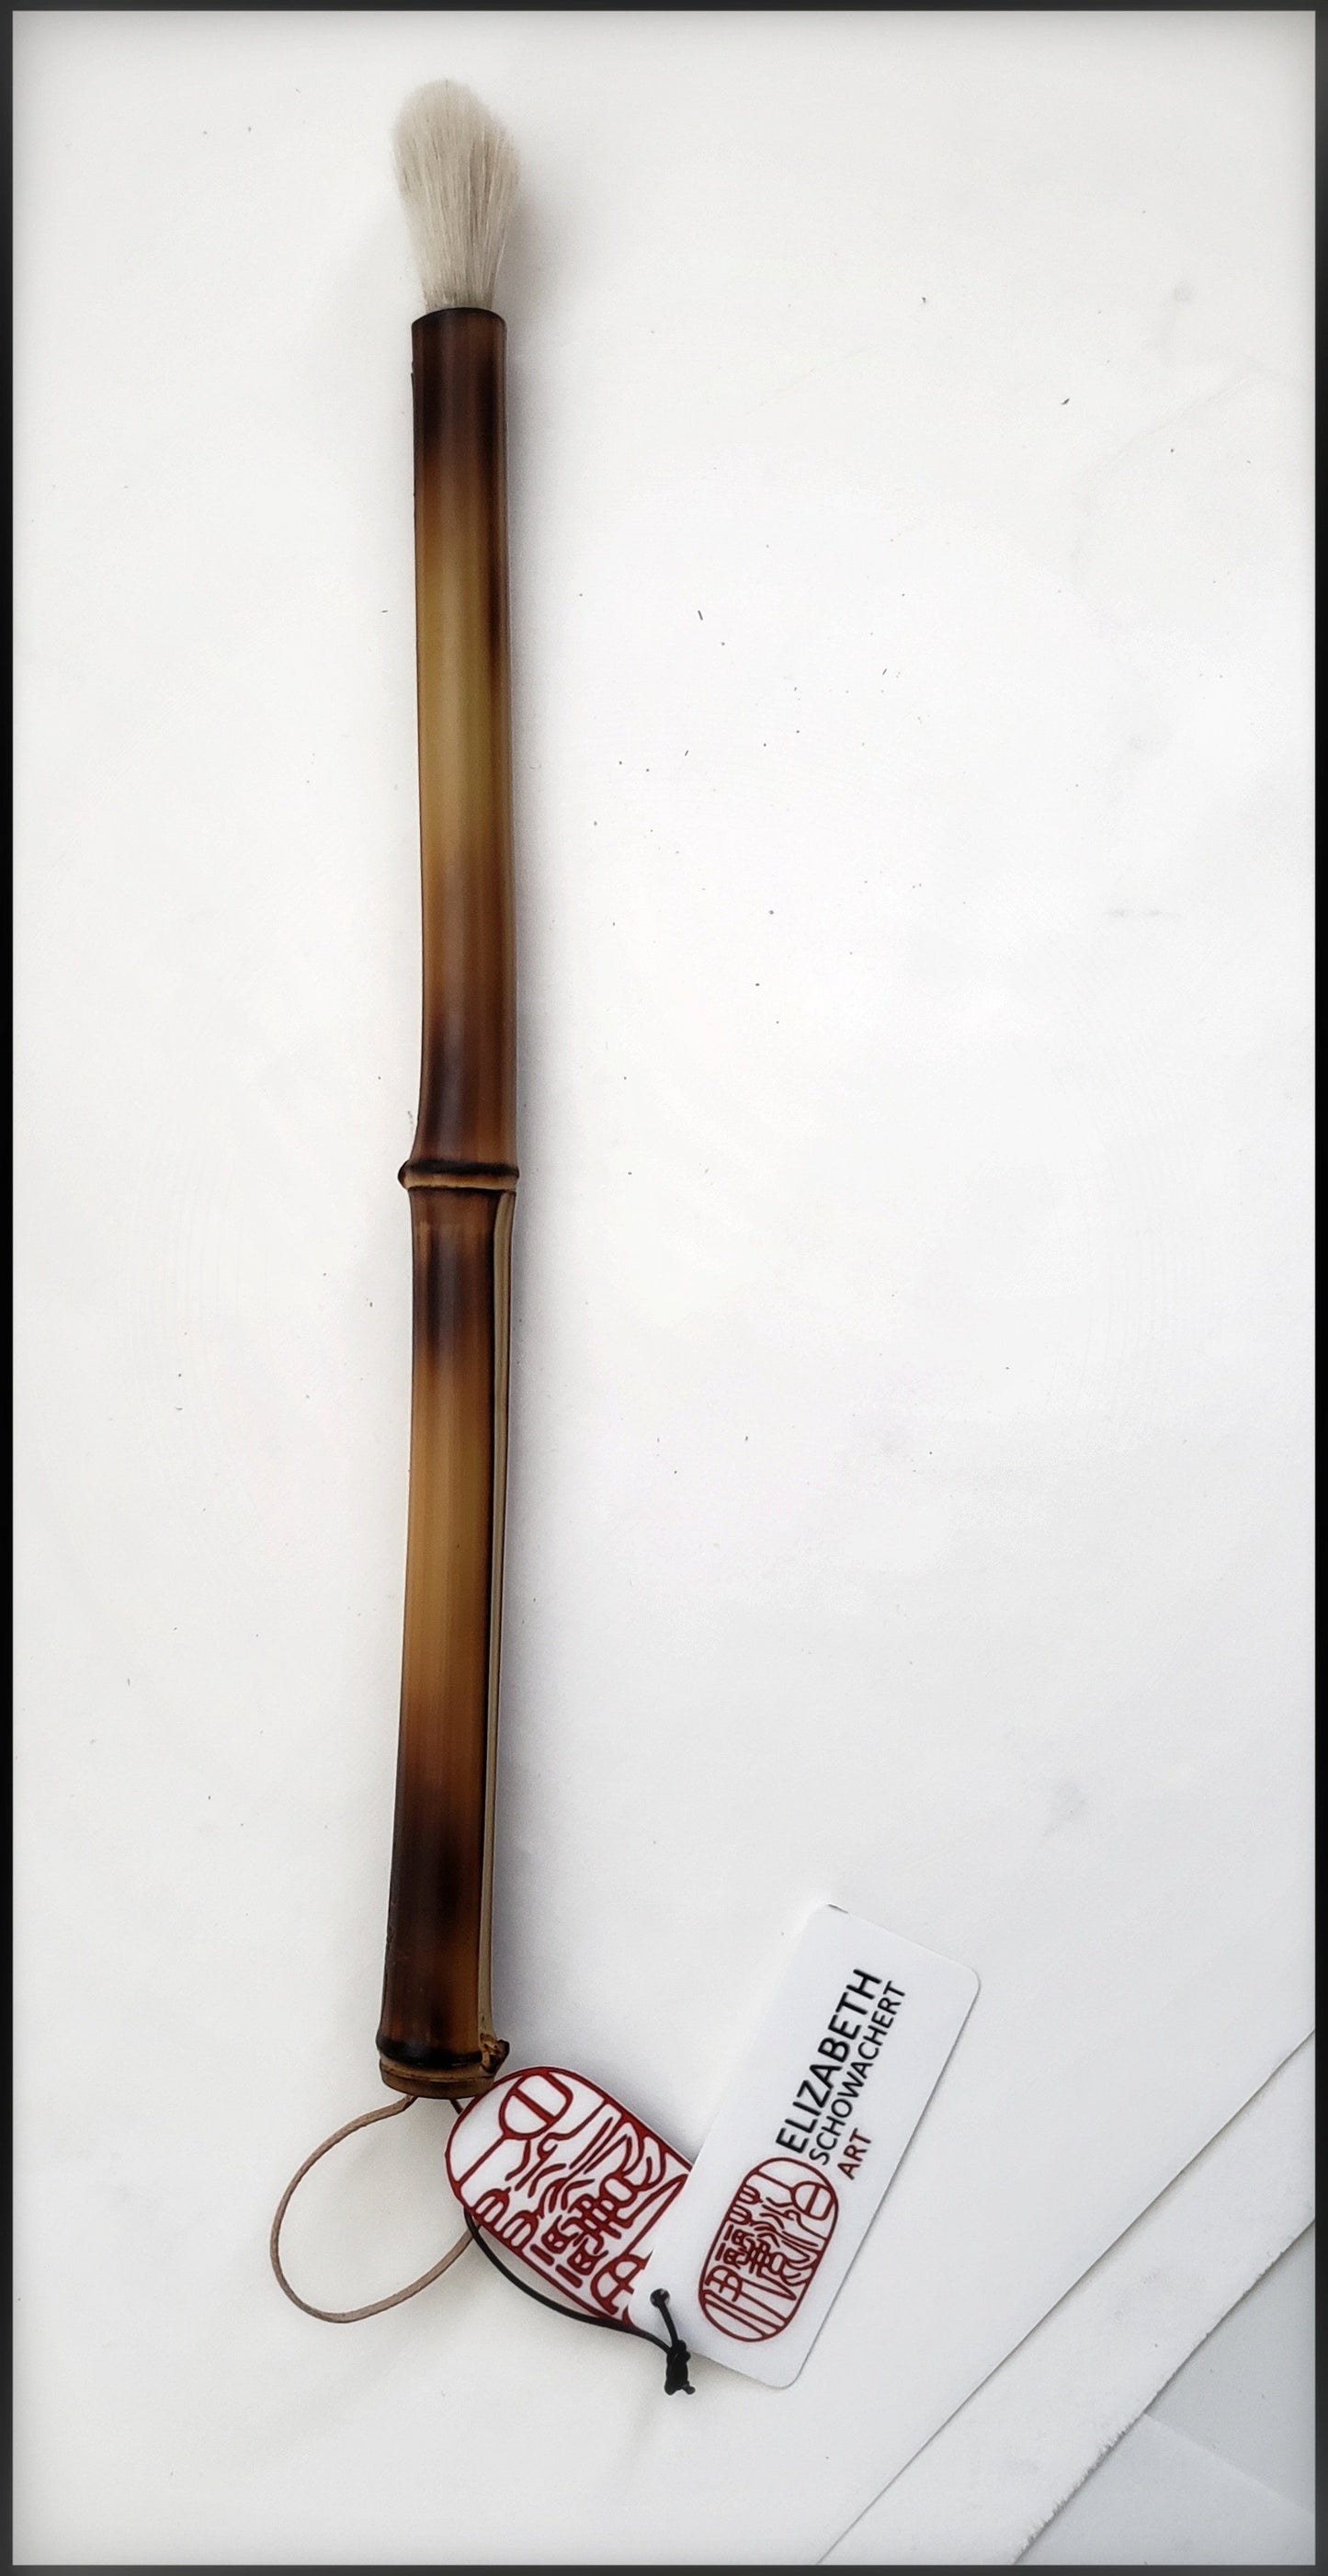 Med. Size Sumi-e Brushes with Bamboo Handles Art Supplies Elizabeth Schowachert Art